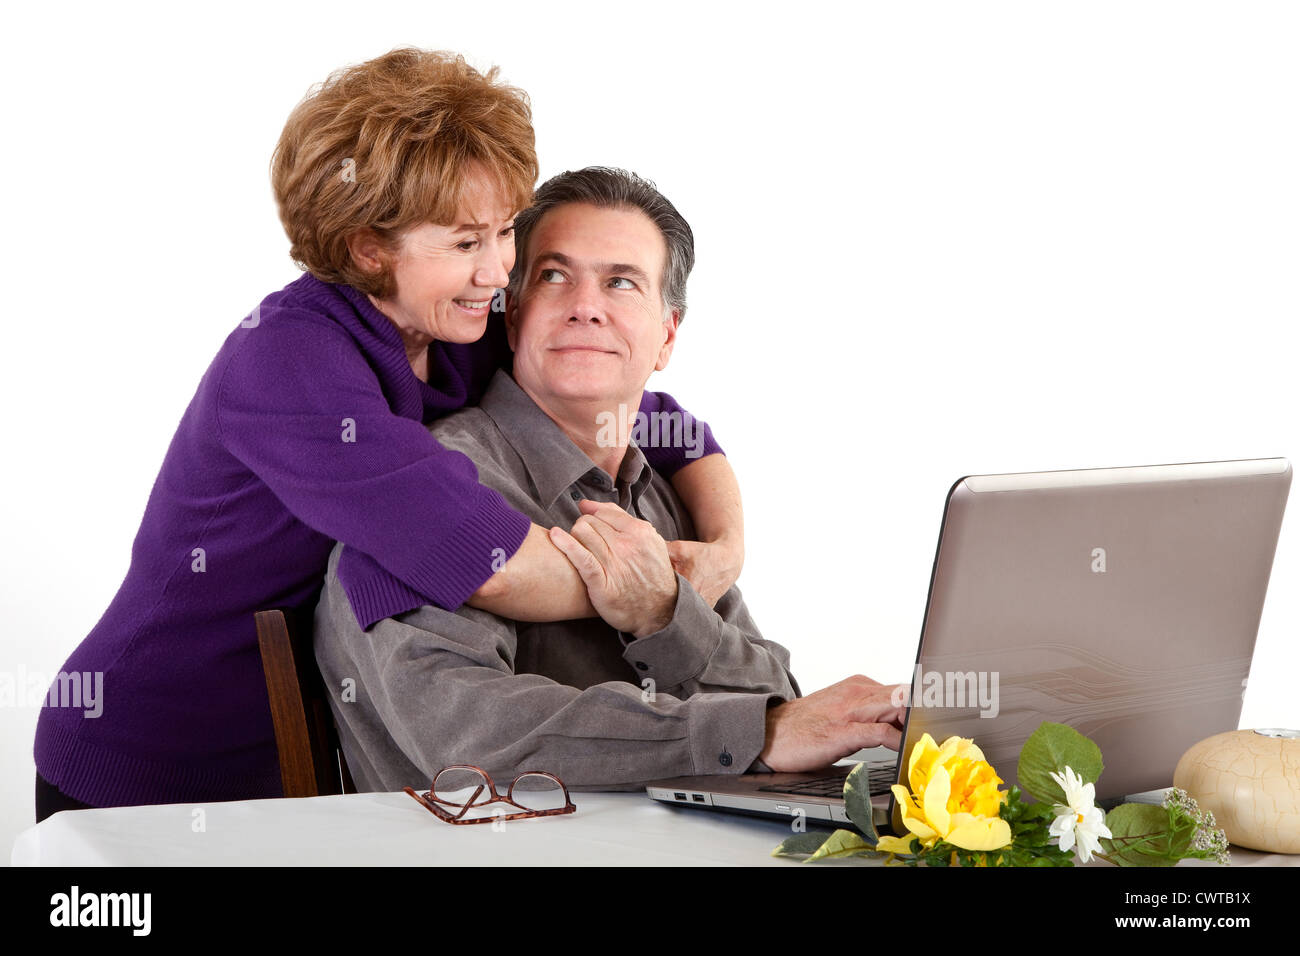 Ein Lächeln auf den Lippen älteres Paar an einem Computer sitzen. Stockfoto